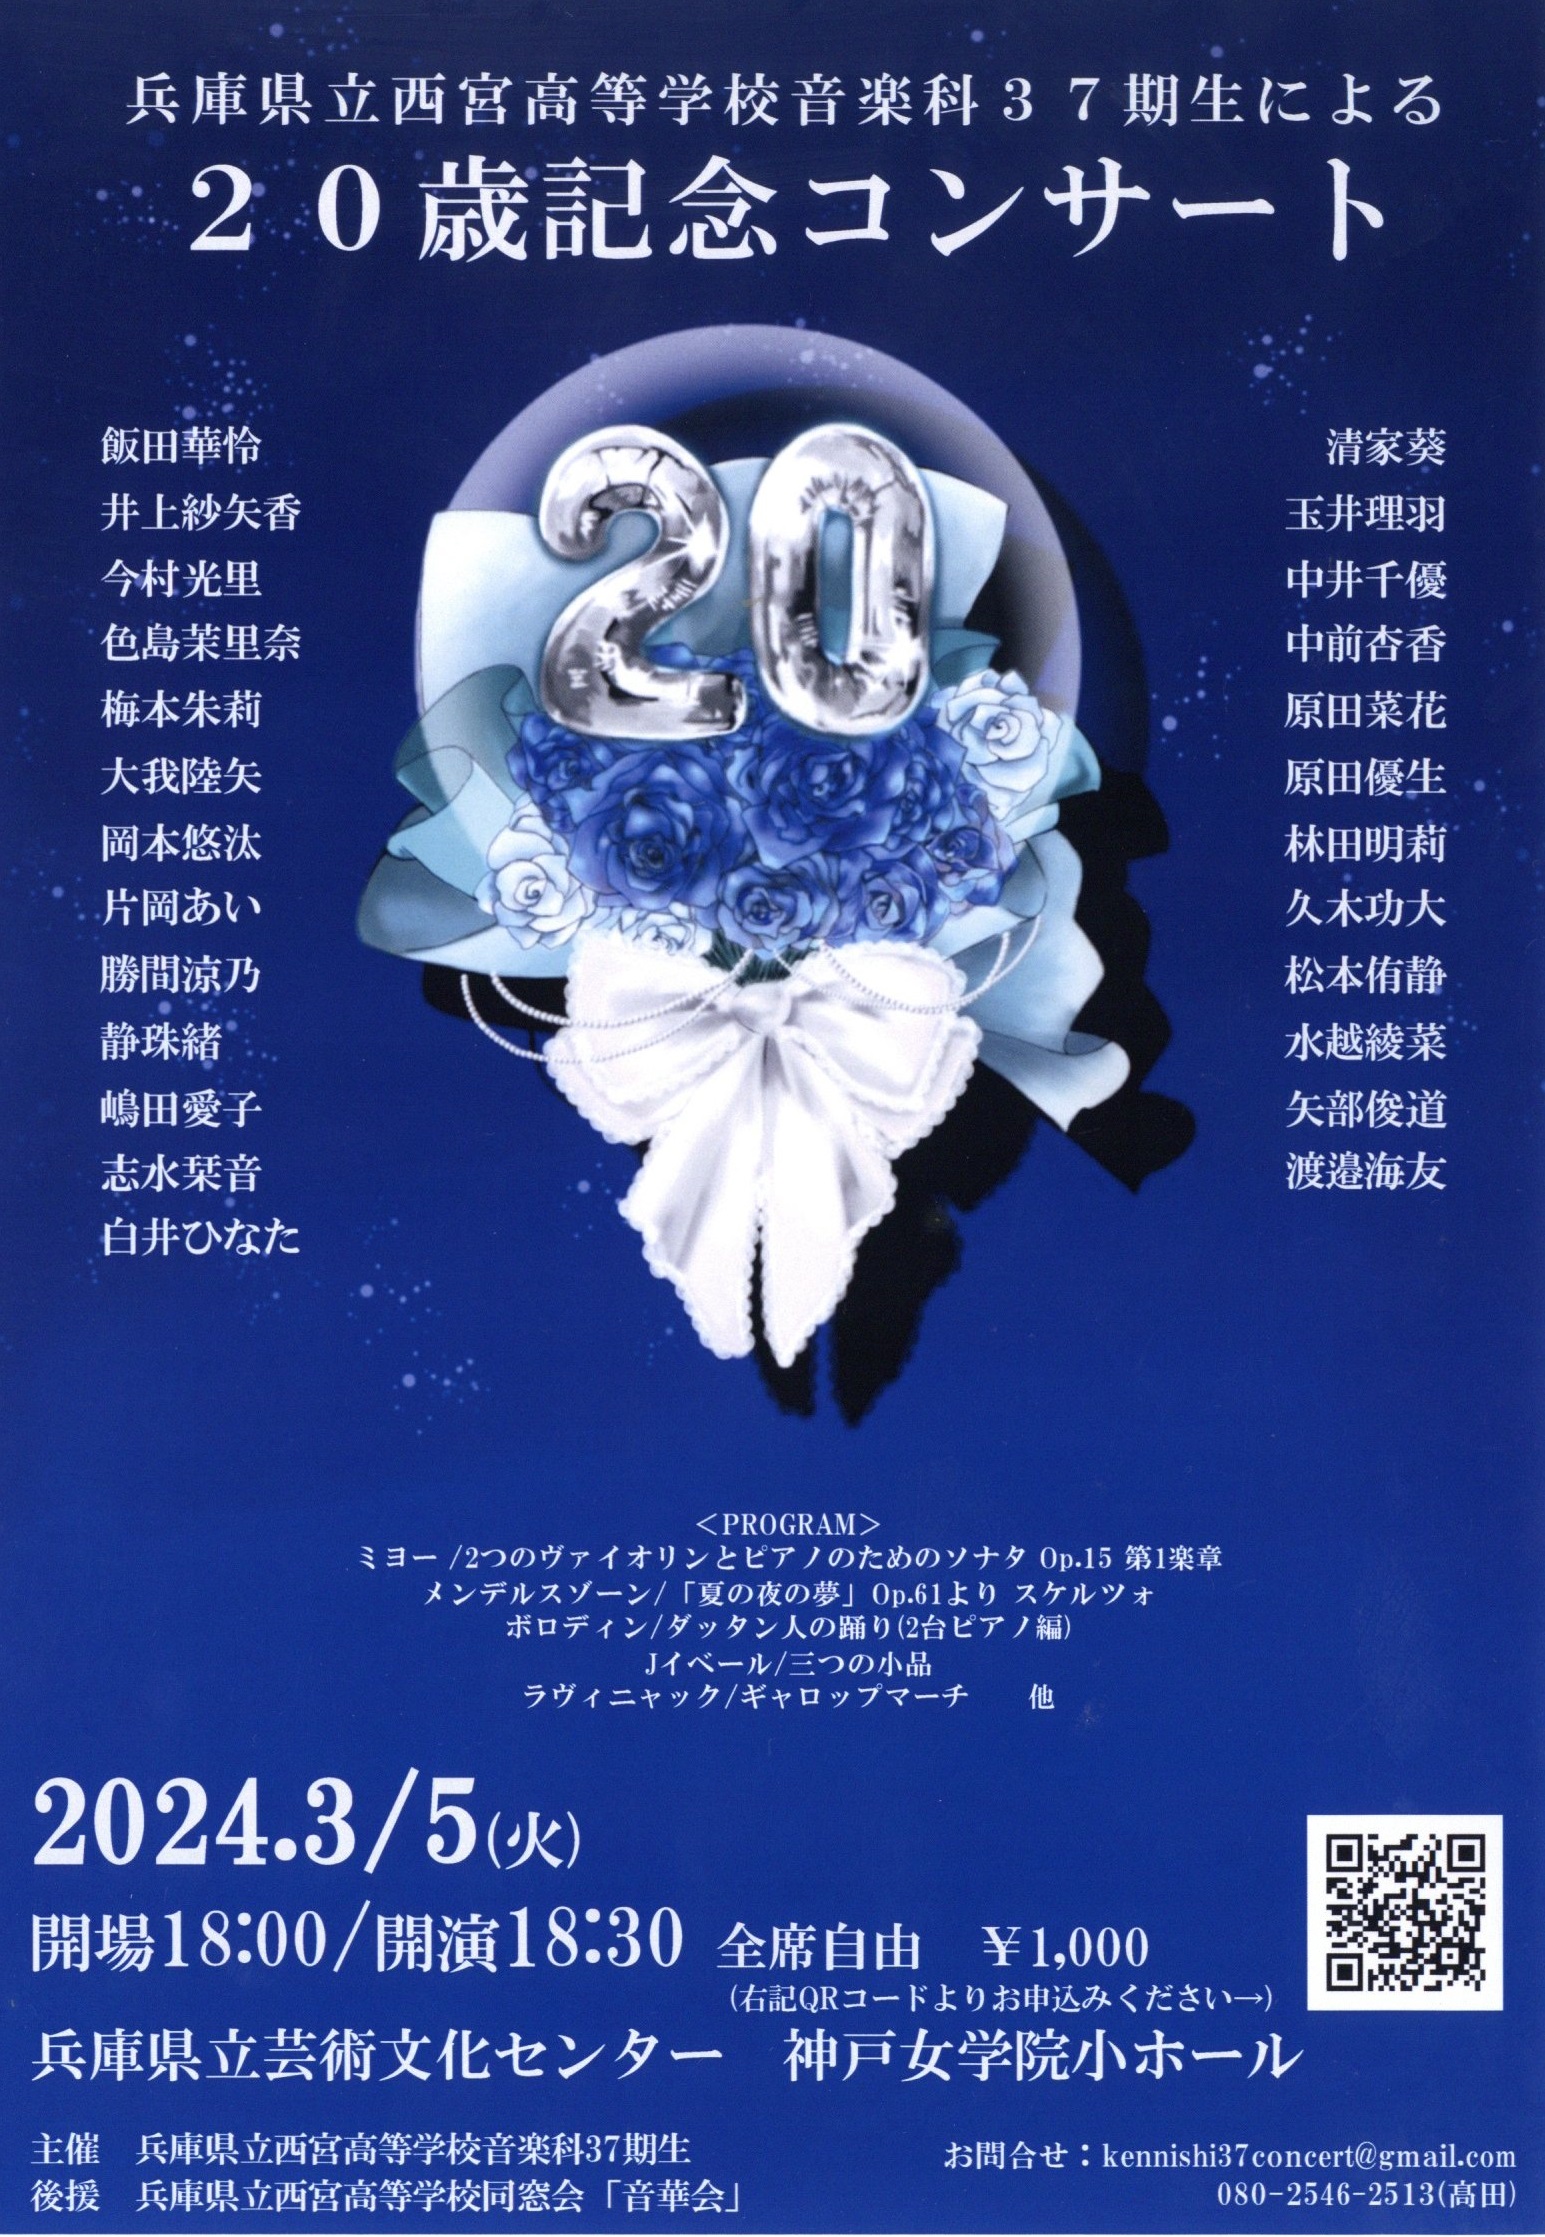 兵庫県立西宮高等学校音楽科37期生有志による20歳記念コンサート